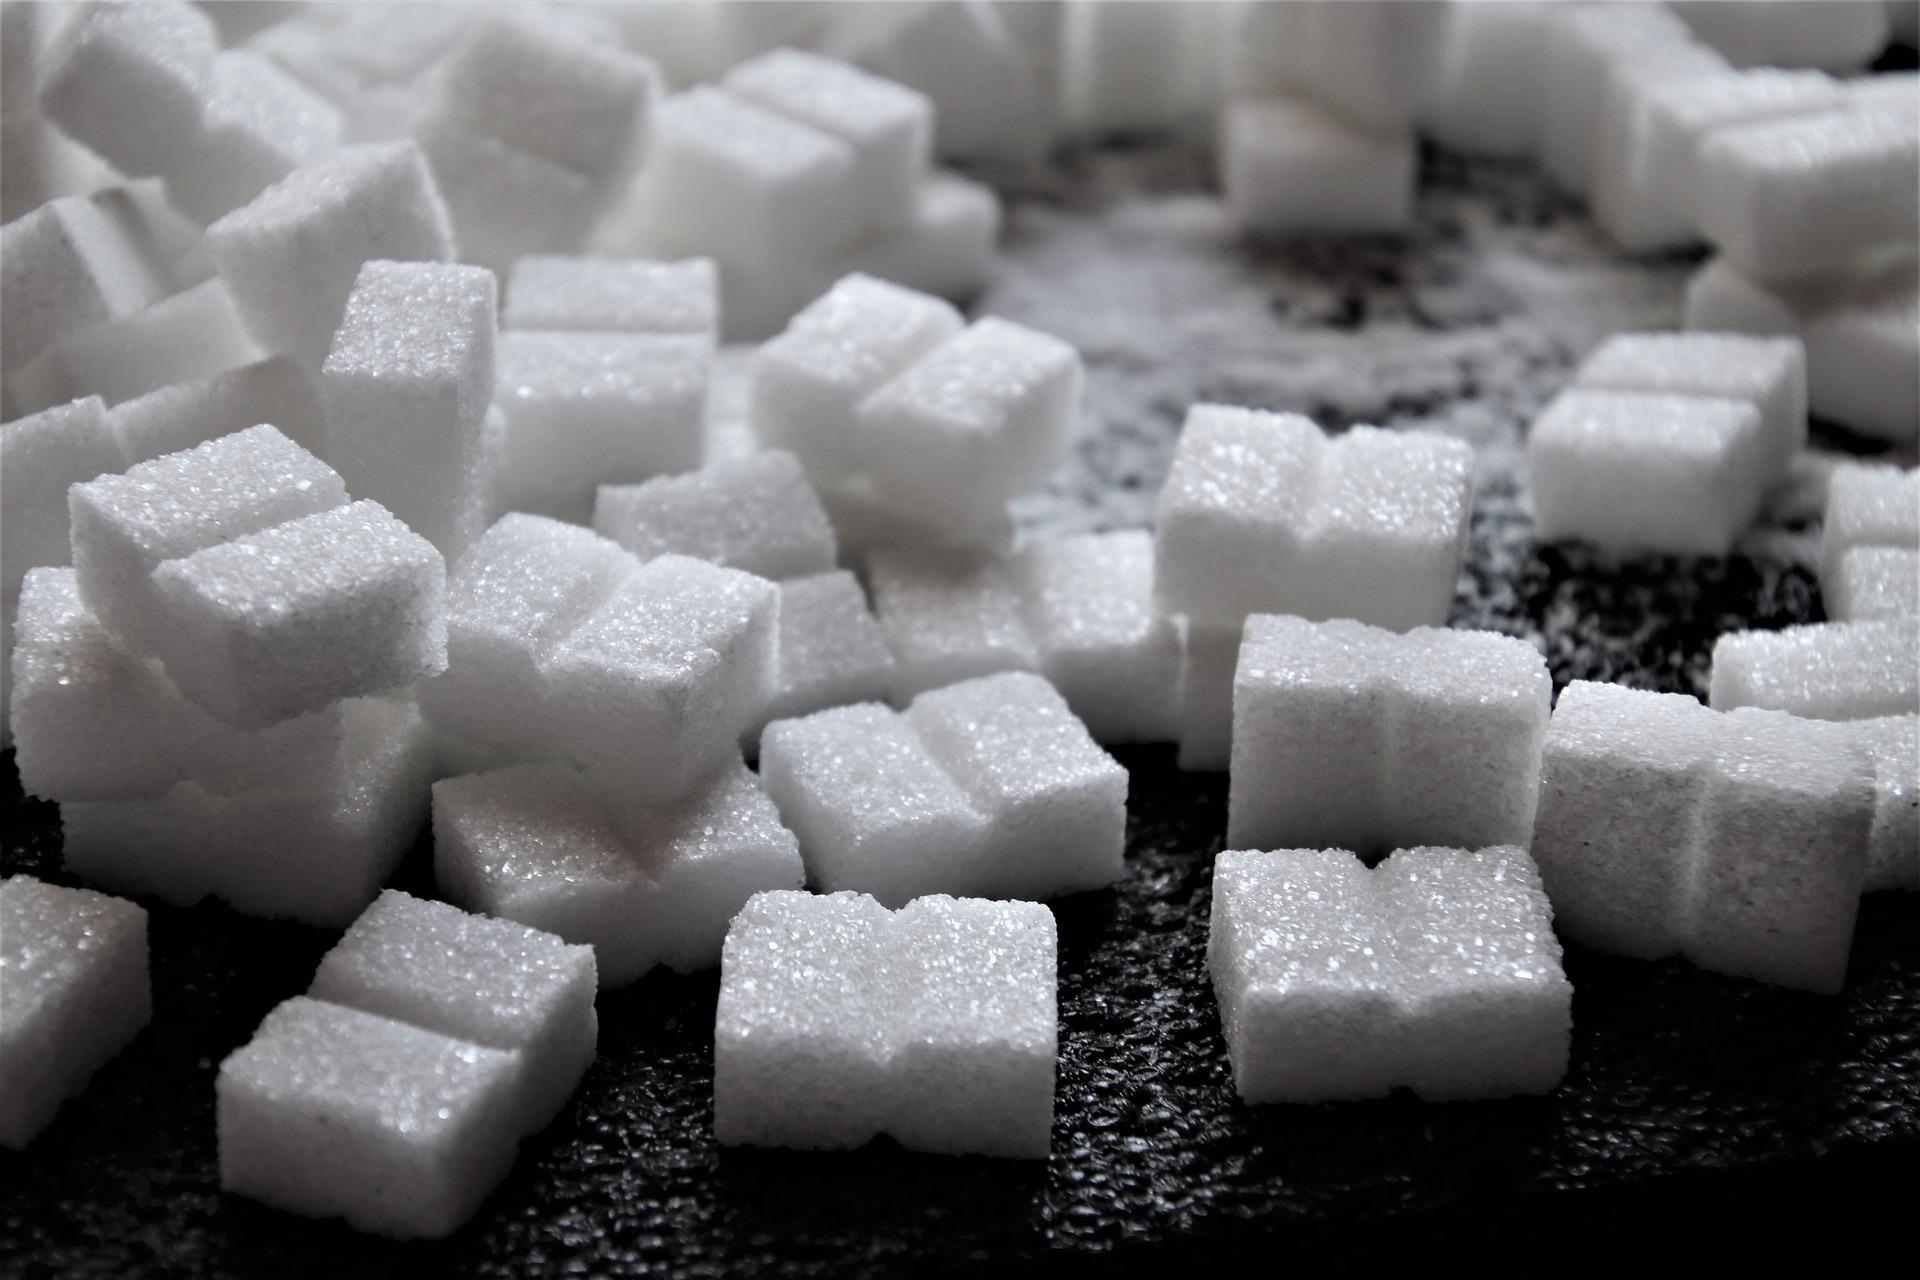 DGZMK: Zucker wird als dosisabhängiges Gift betrachtet